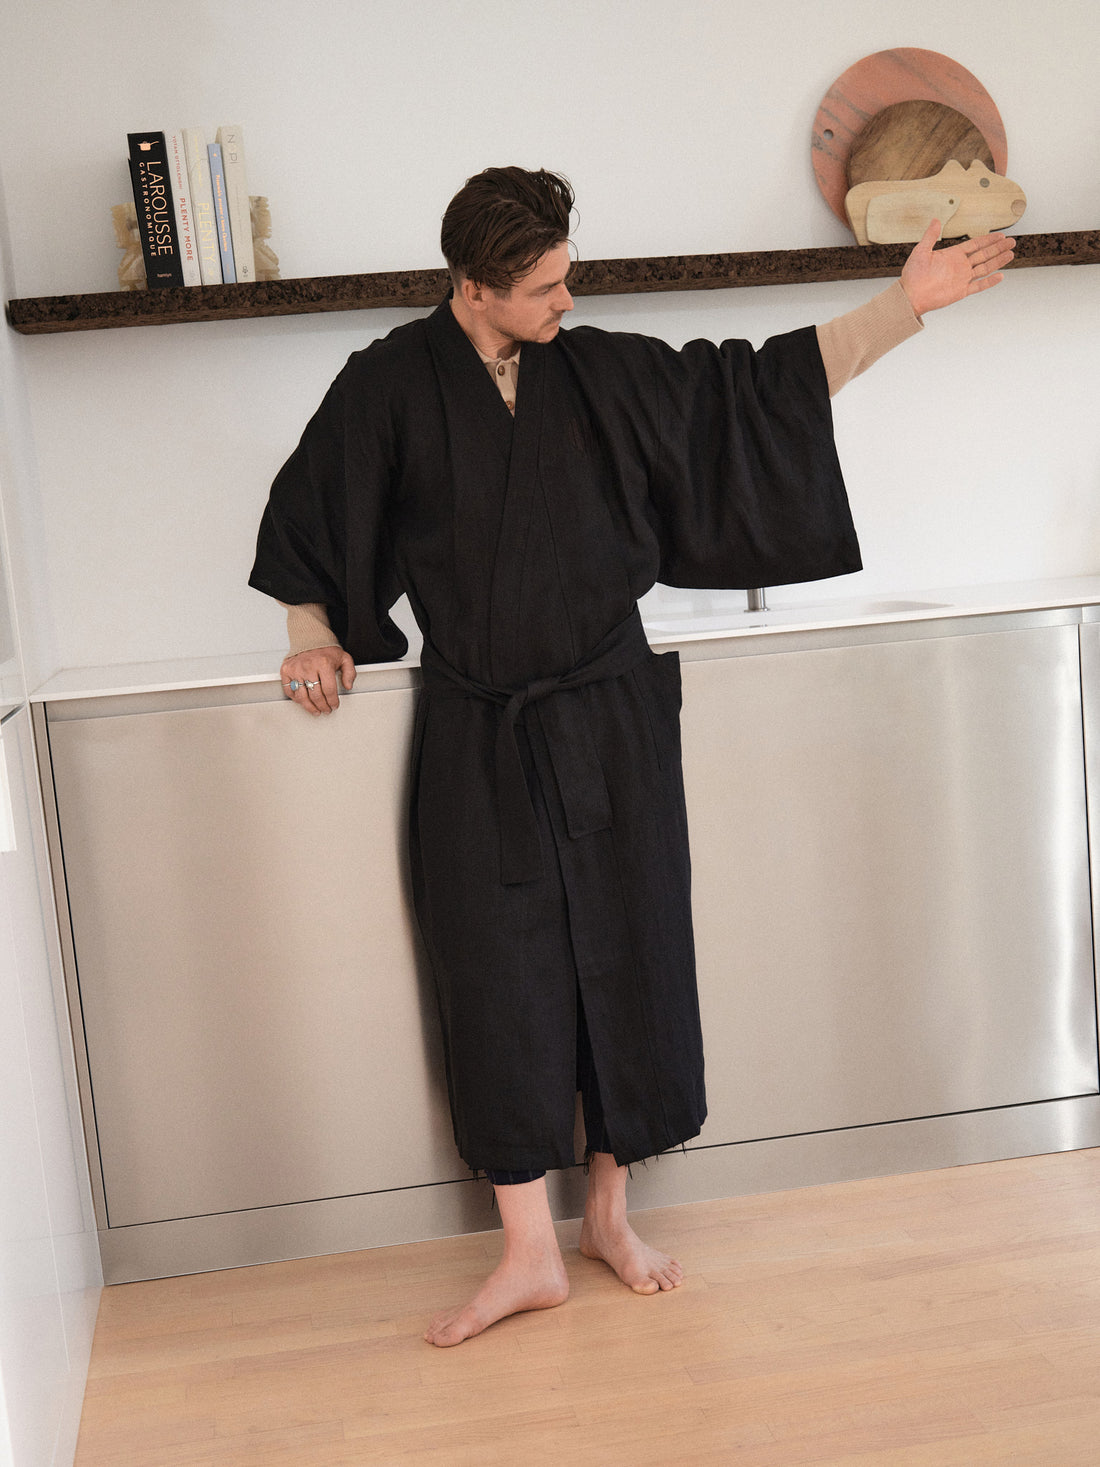 ŁYKO x PURO Kimono | Black | Men